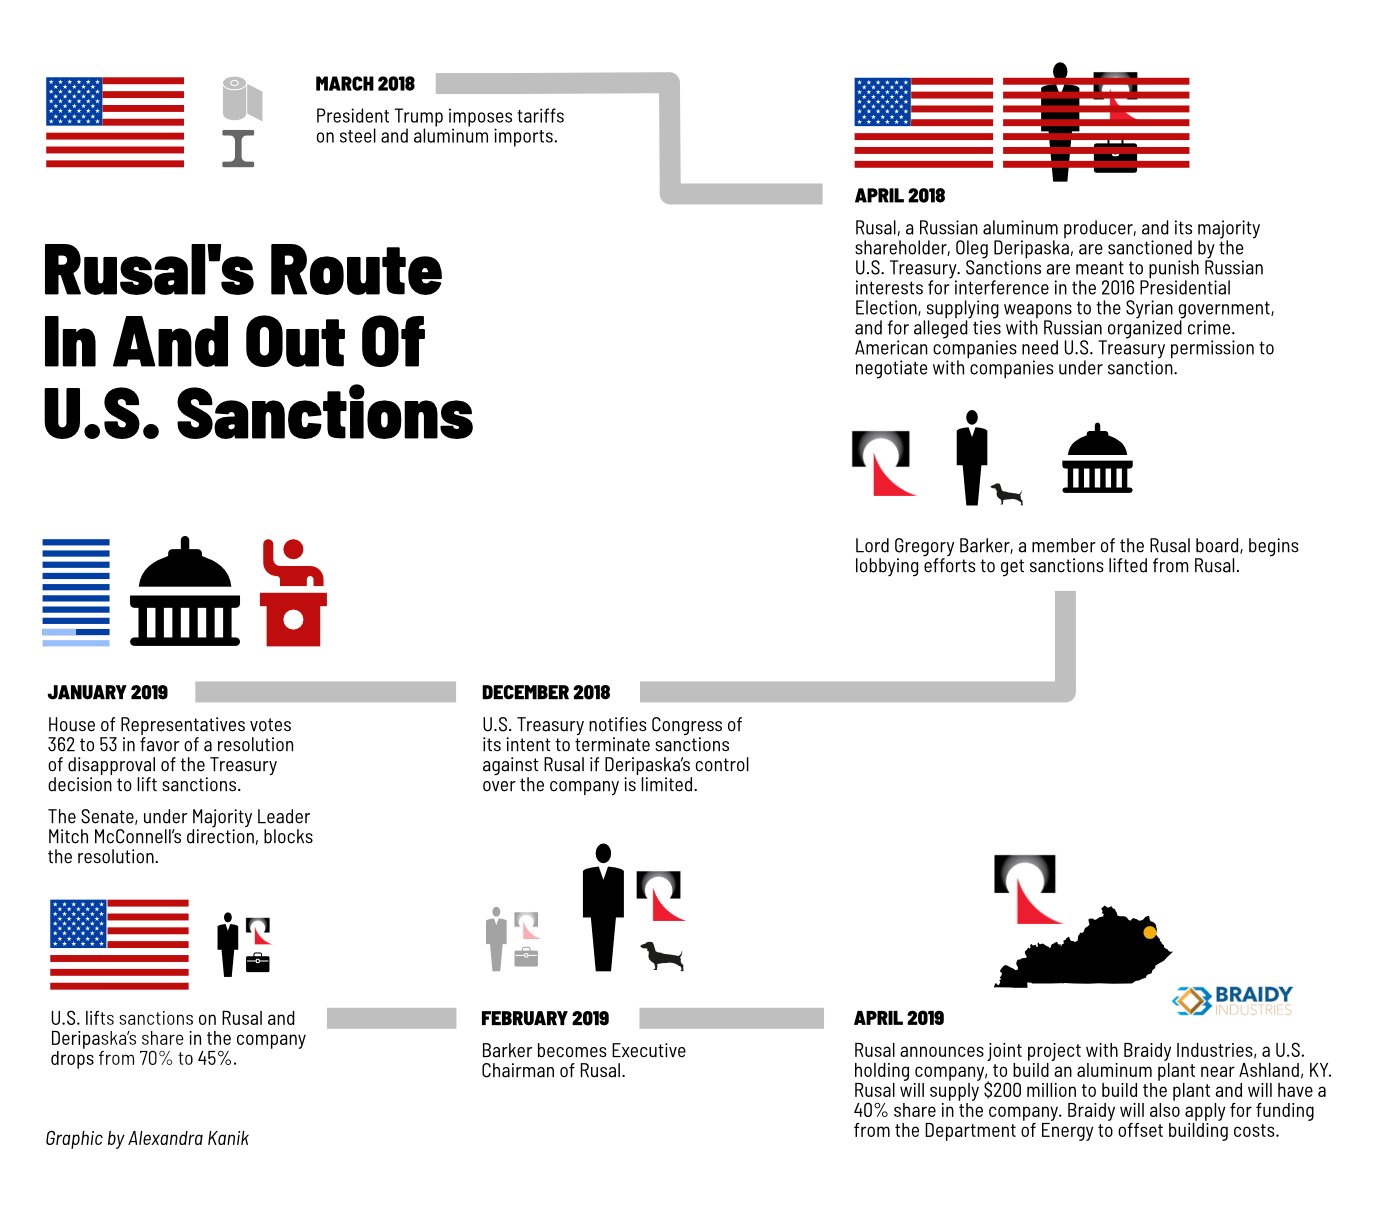 Gráfico con la cronología de los hechos desde la imposición de sanciones a Rusal, en abril de 2018, hasta la firma de una Joint Venture para acceder al mercado estadounidense un año después.